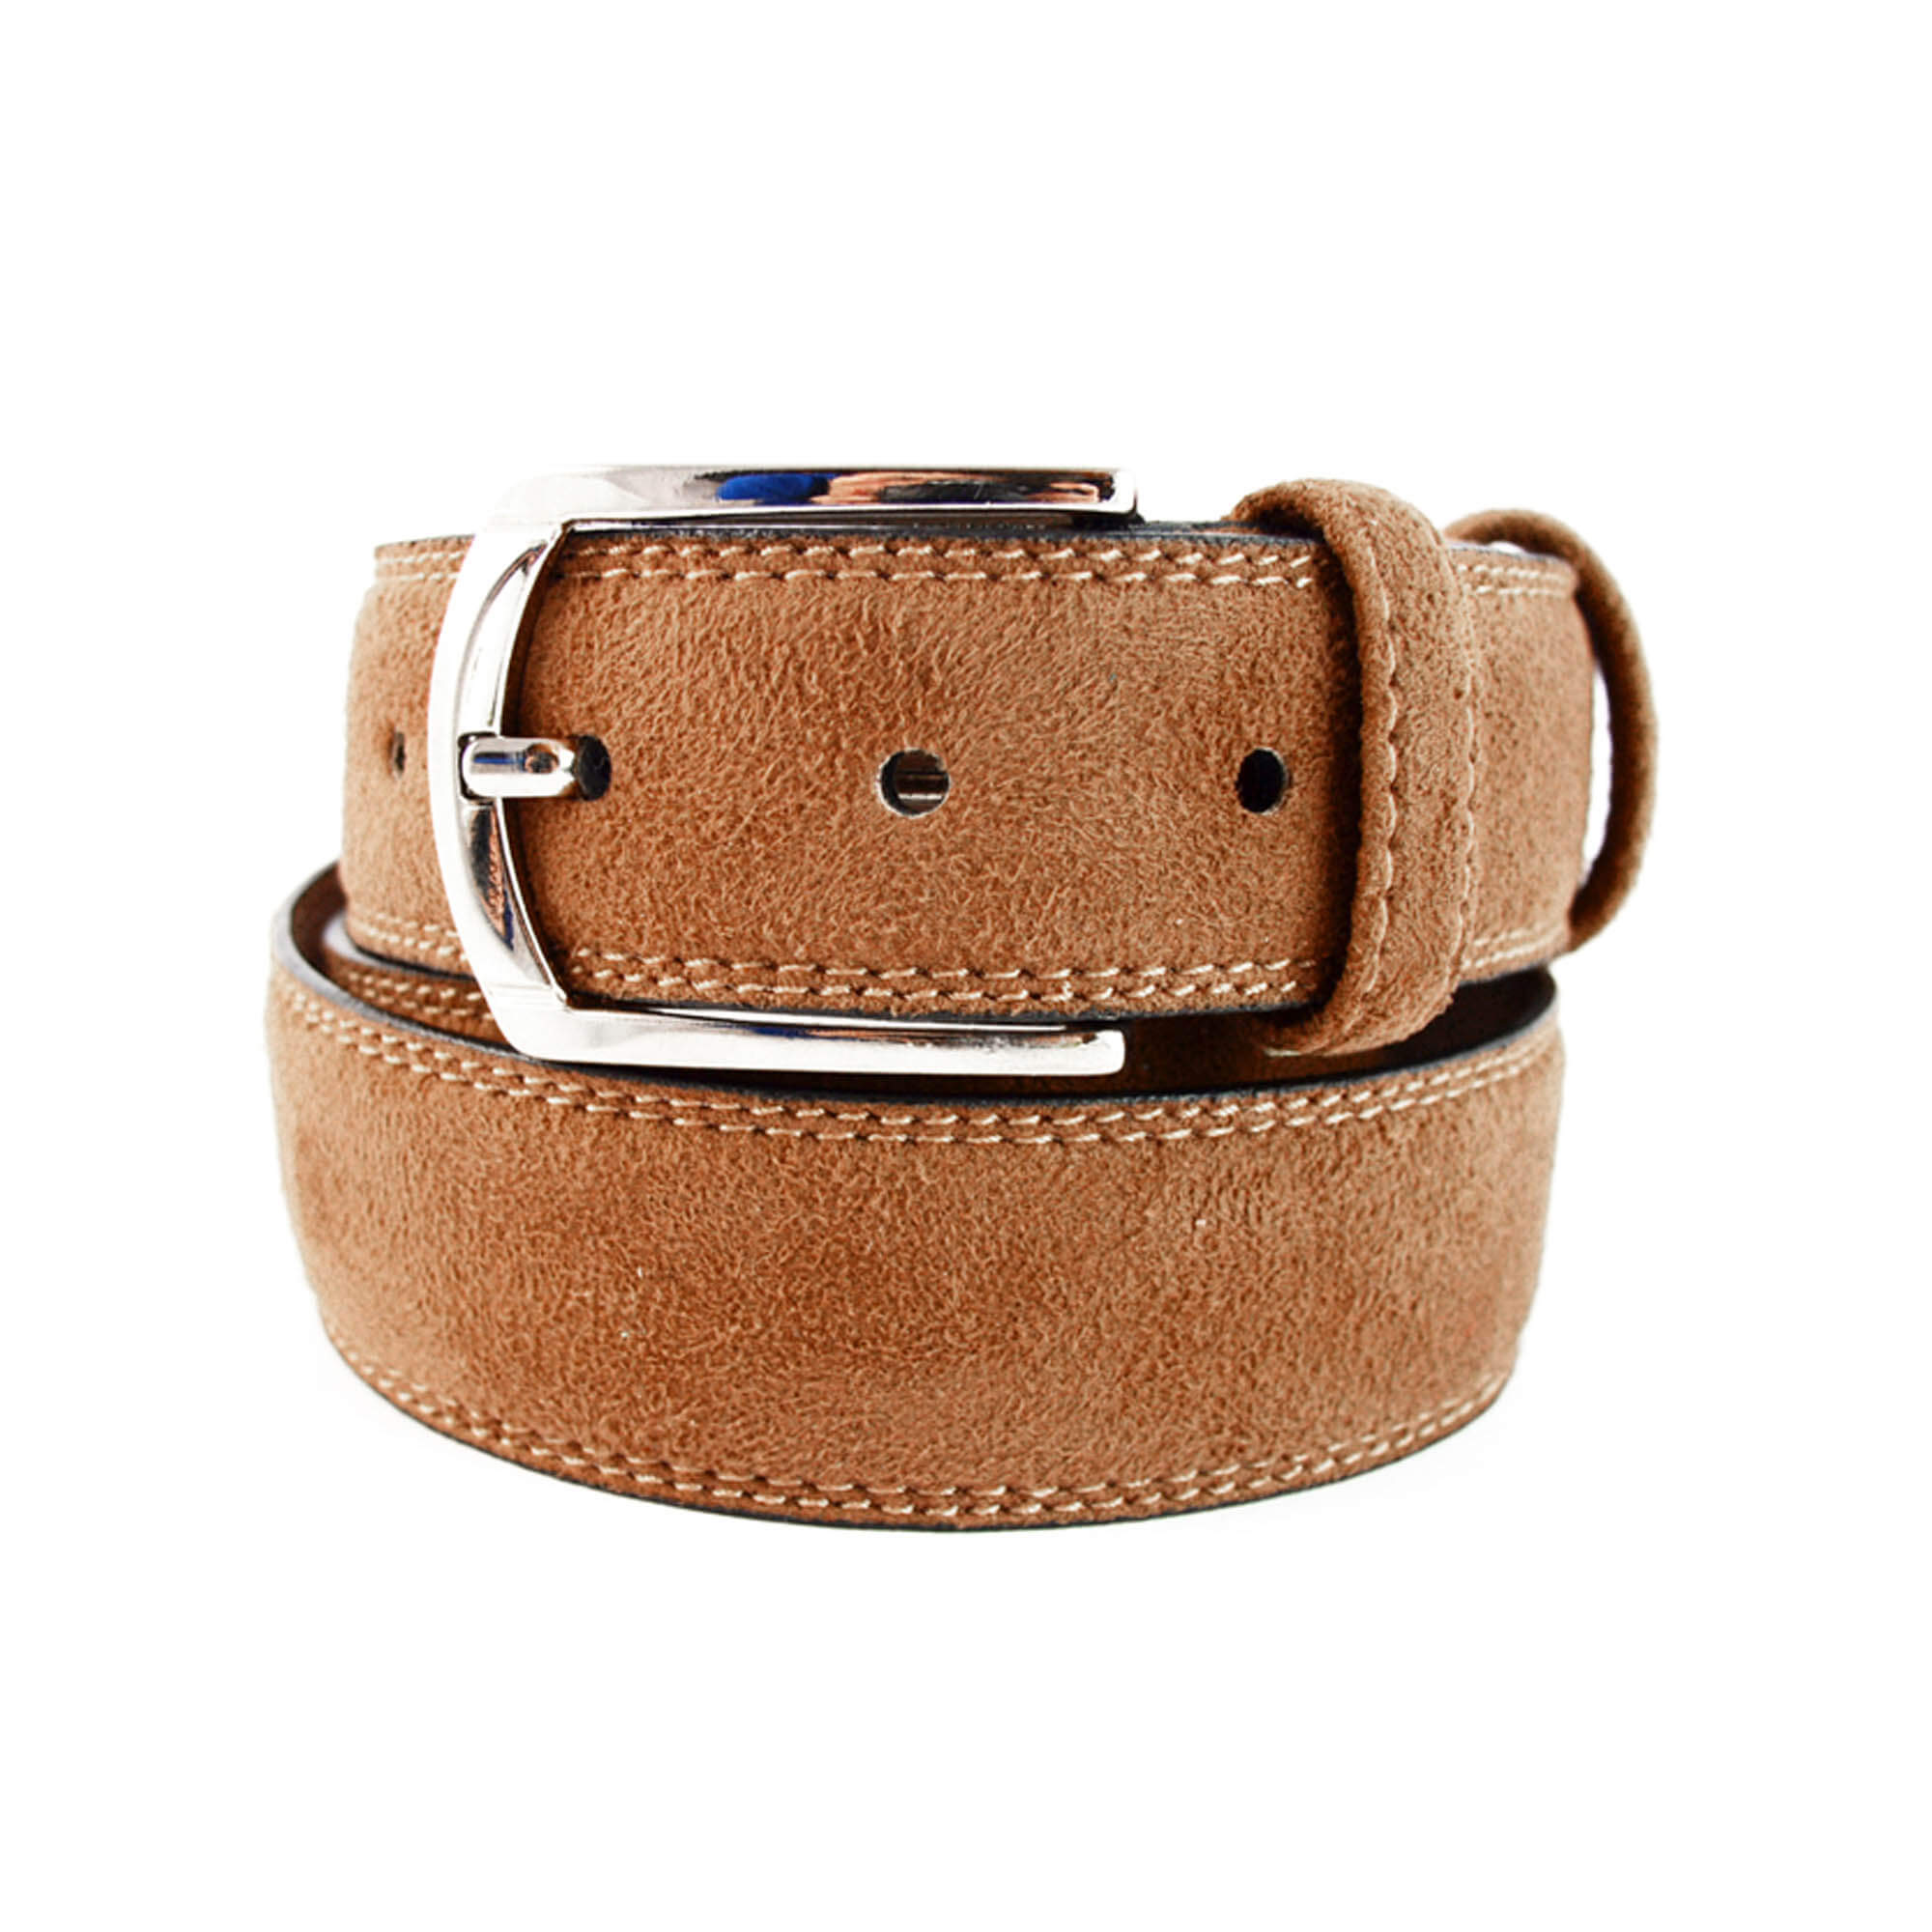 Buy Mens Light Brown Belt - Suede Leather - LeatherBeltsOnline